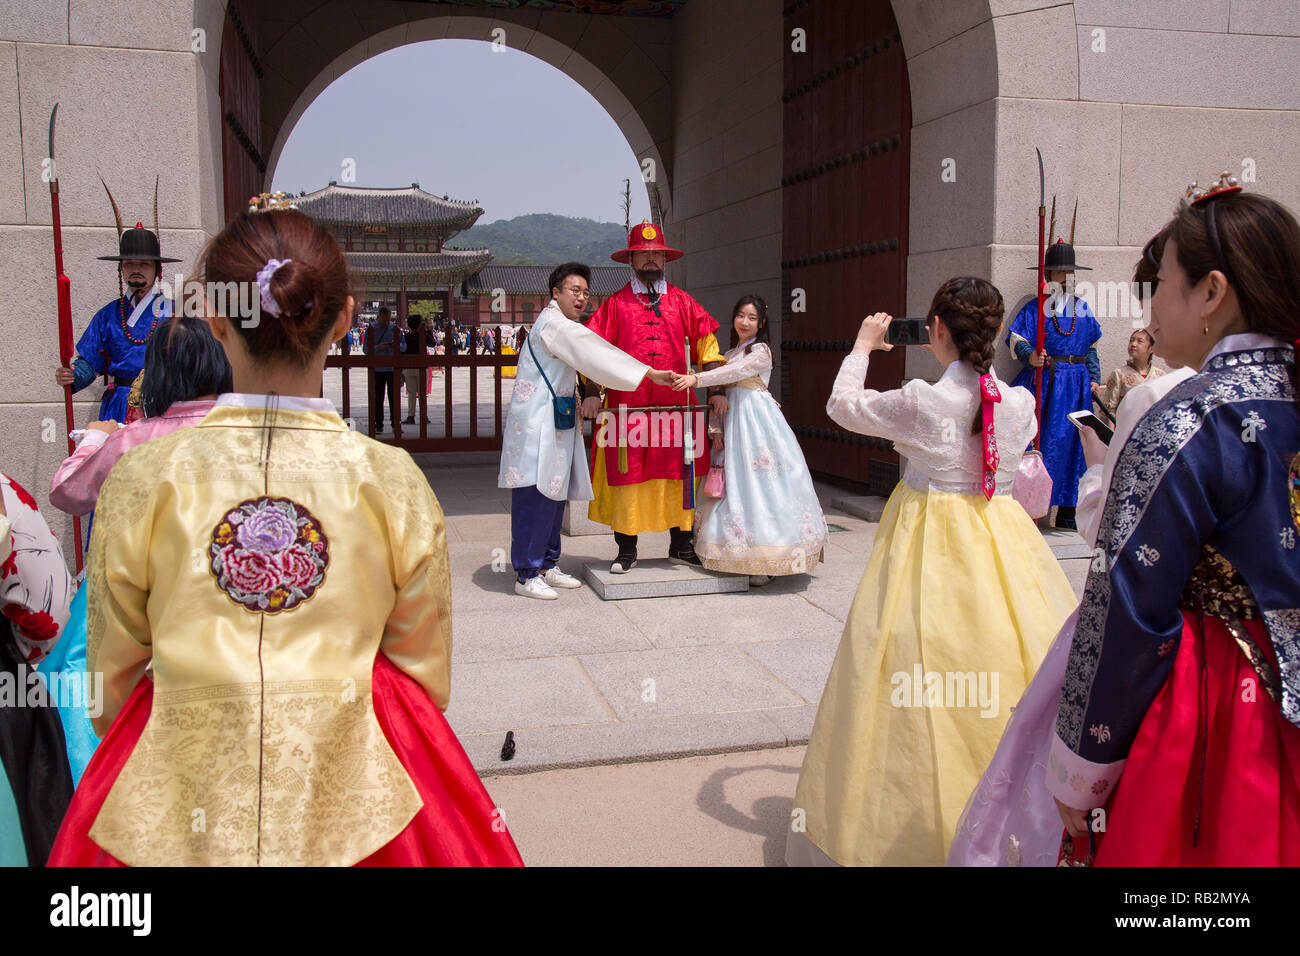 Visitors at the Gyeongbokgung Palace in Seoul, South Korea. Stock Photo